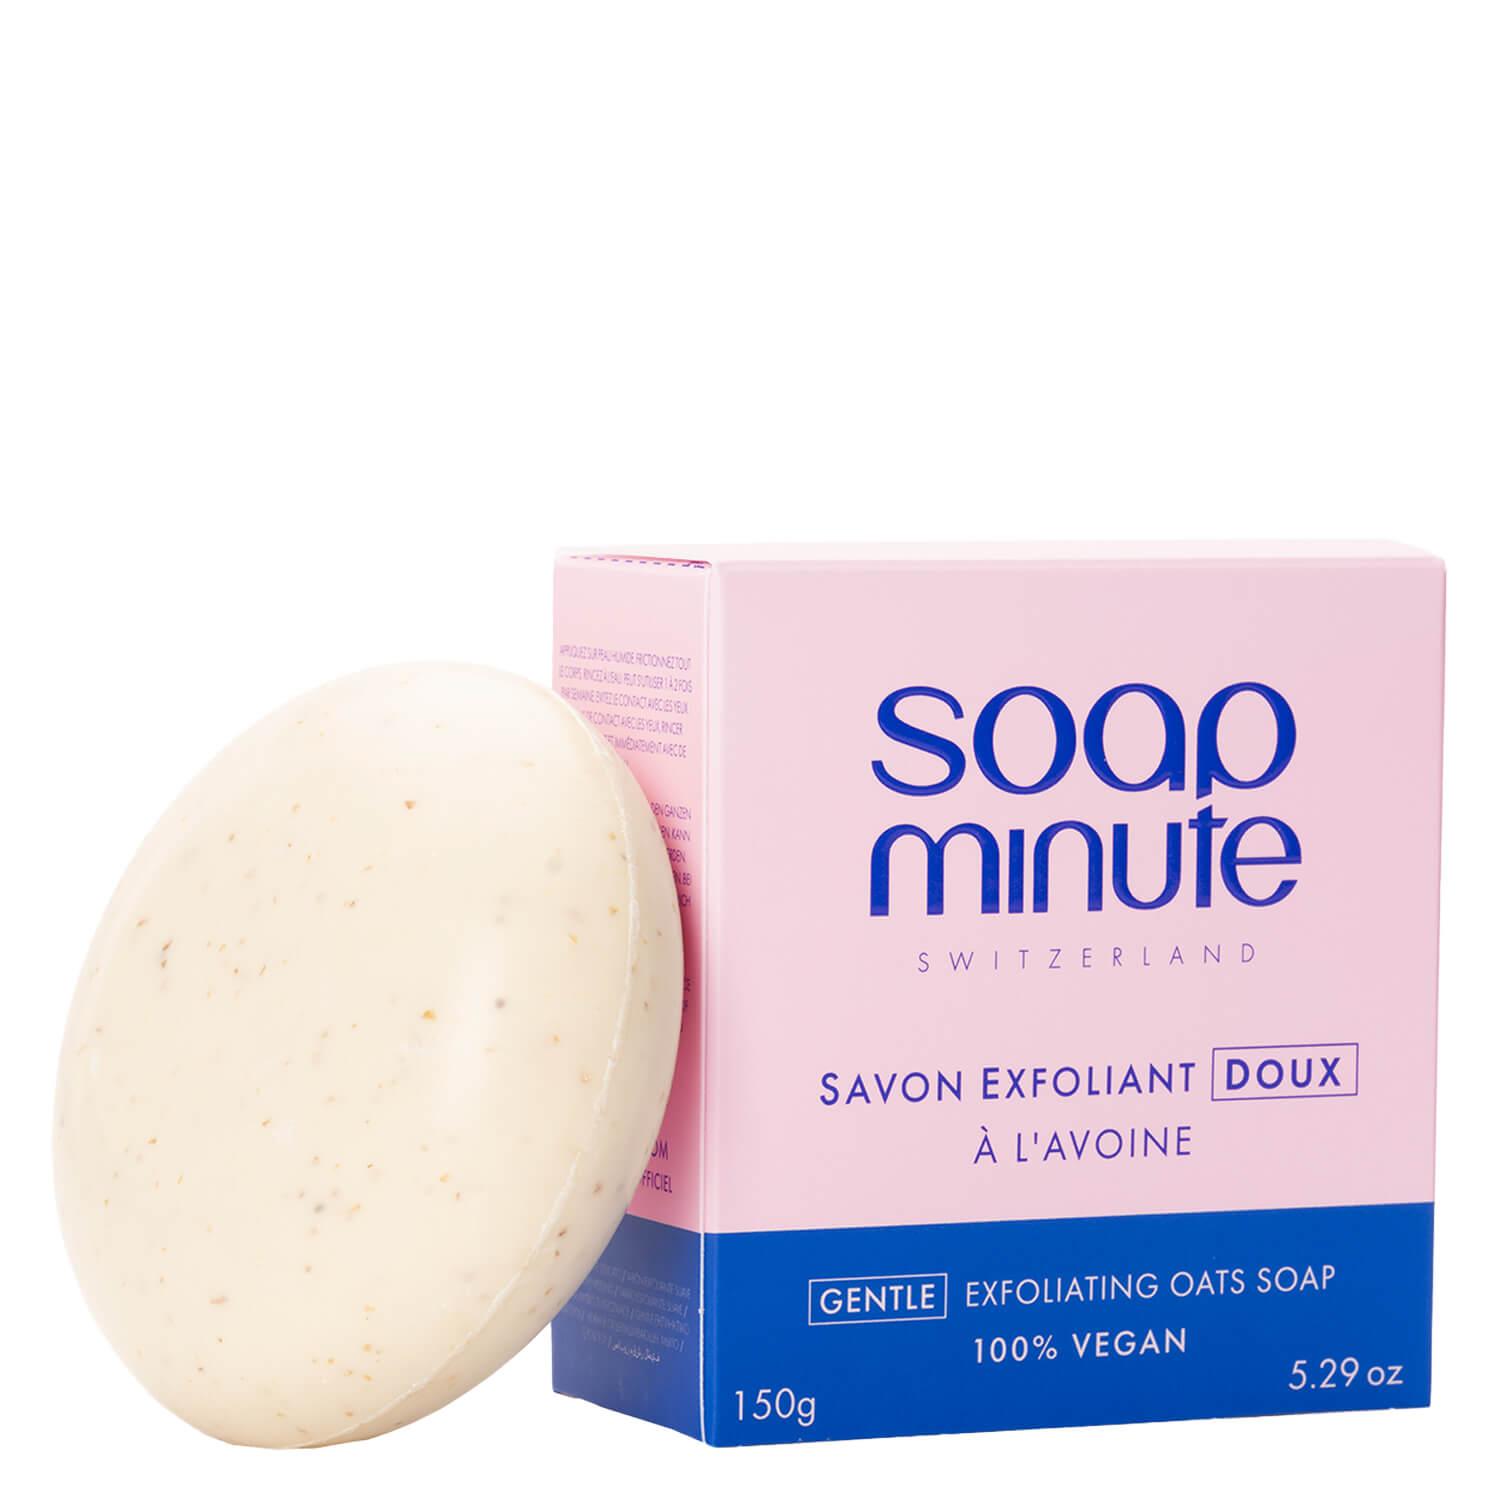 soapminute - Savon Exfoliant Doux à l'Avoine